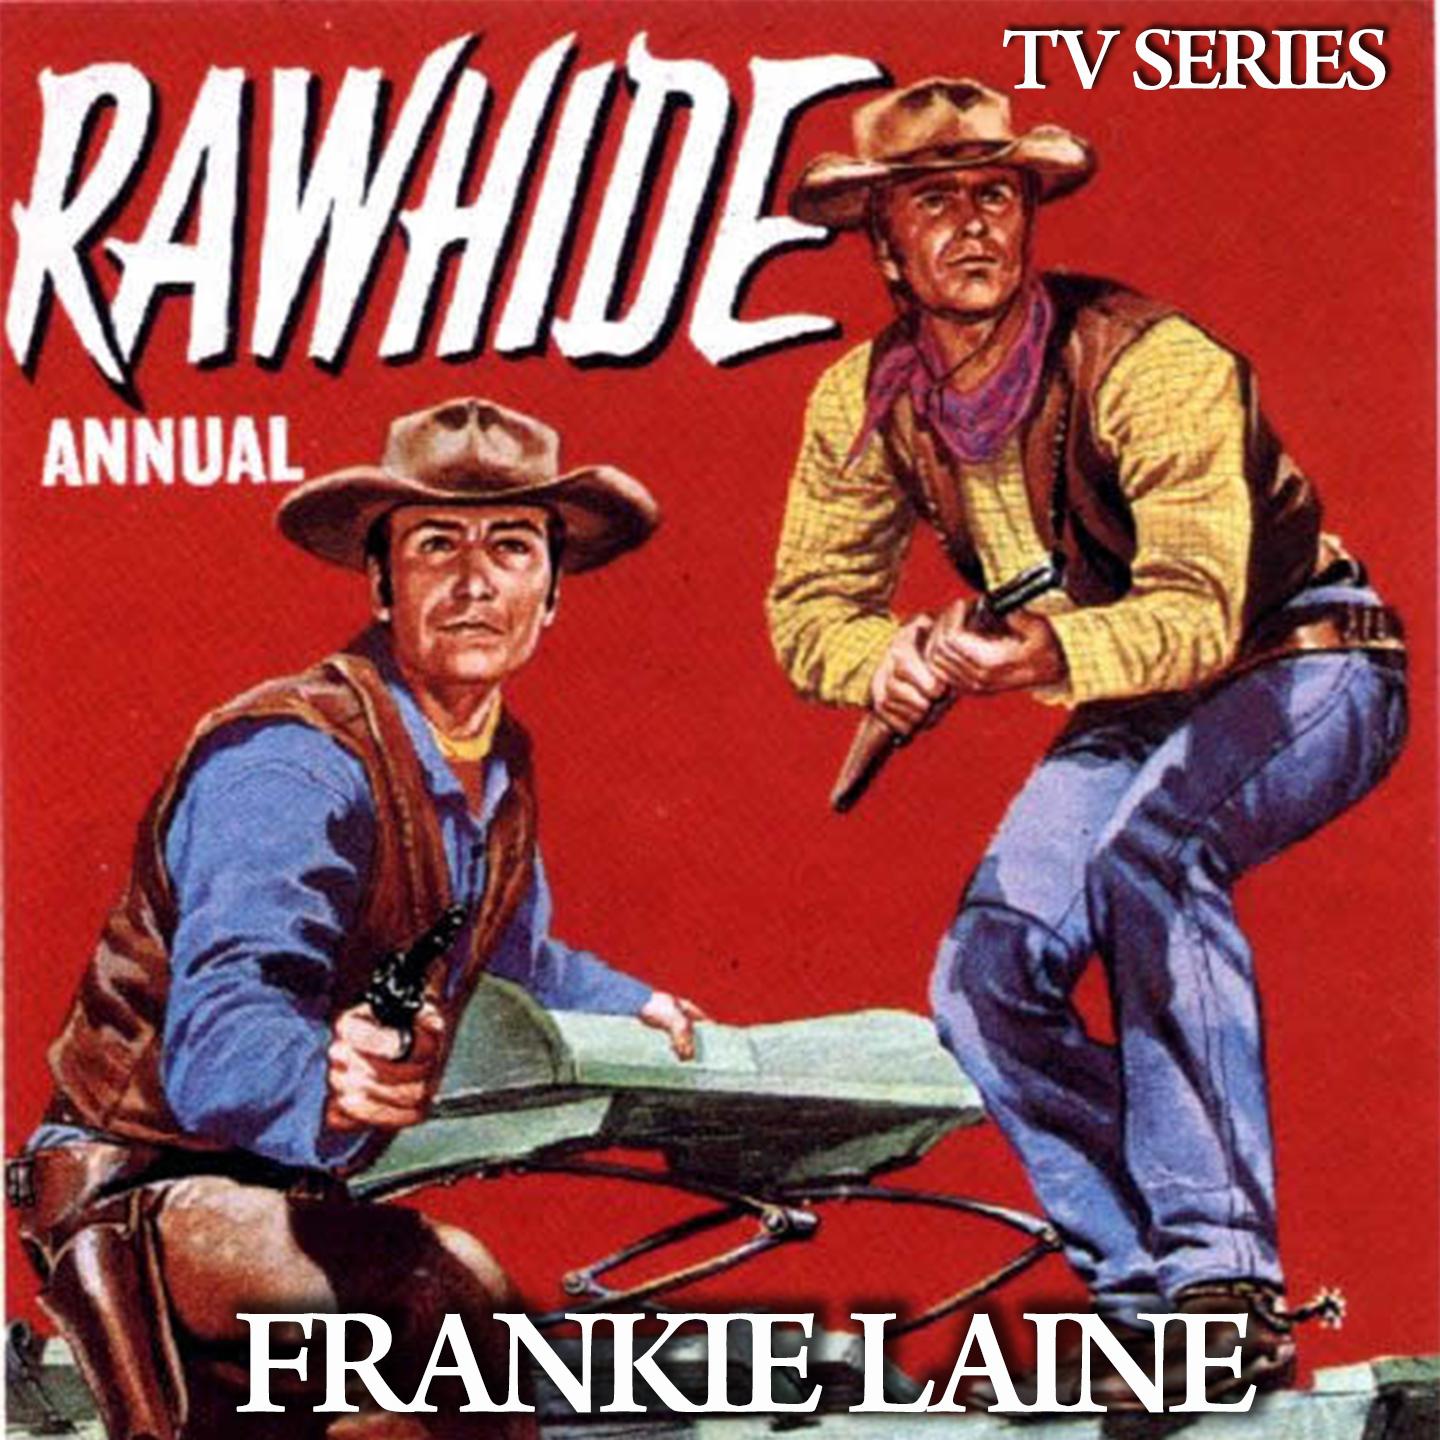 Rawhide (From TV Series "Rawhide")